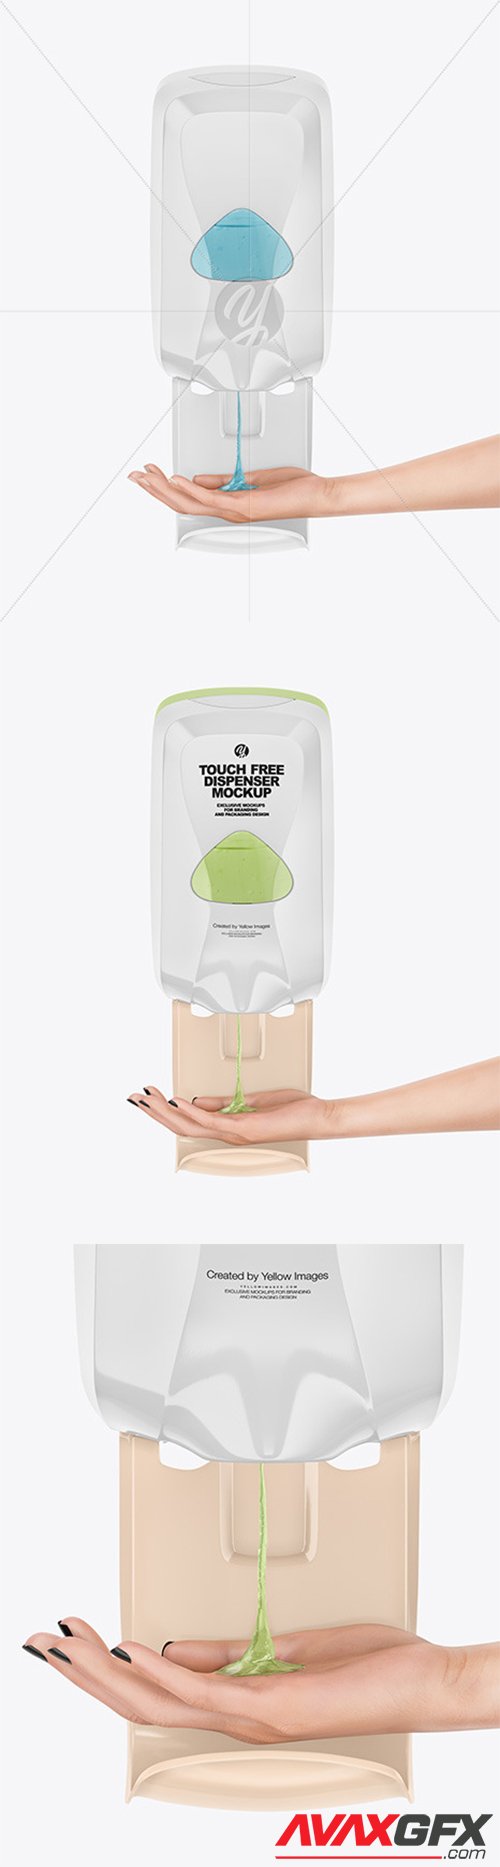 Sanitizer Dispenser with Hand Mockup 59608